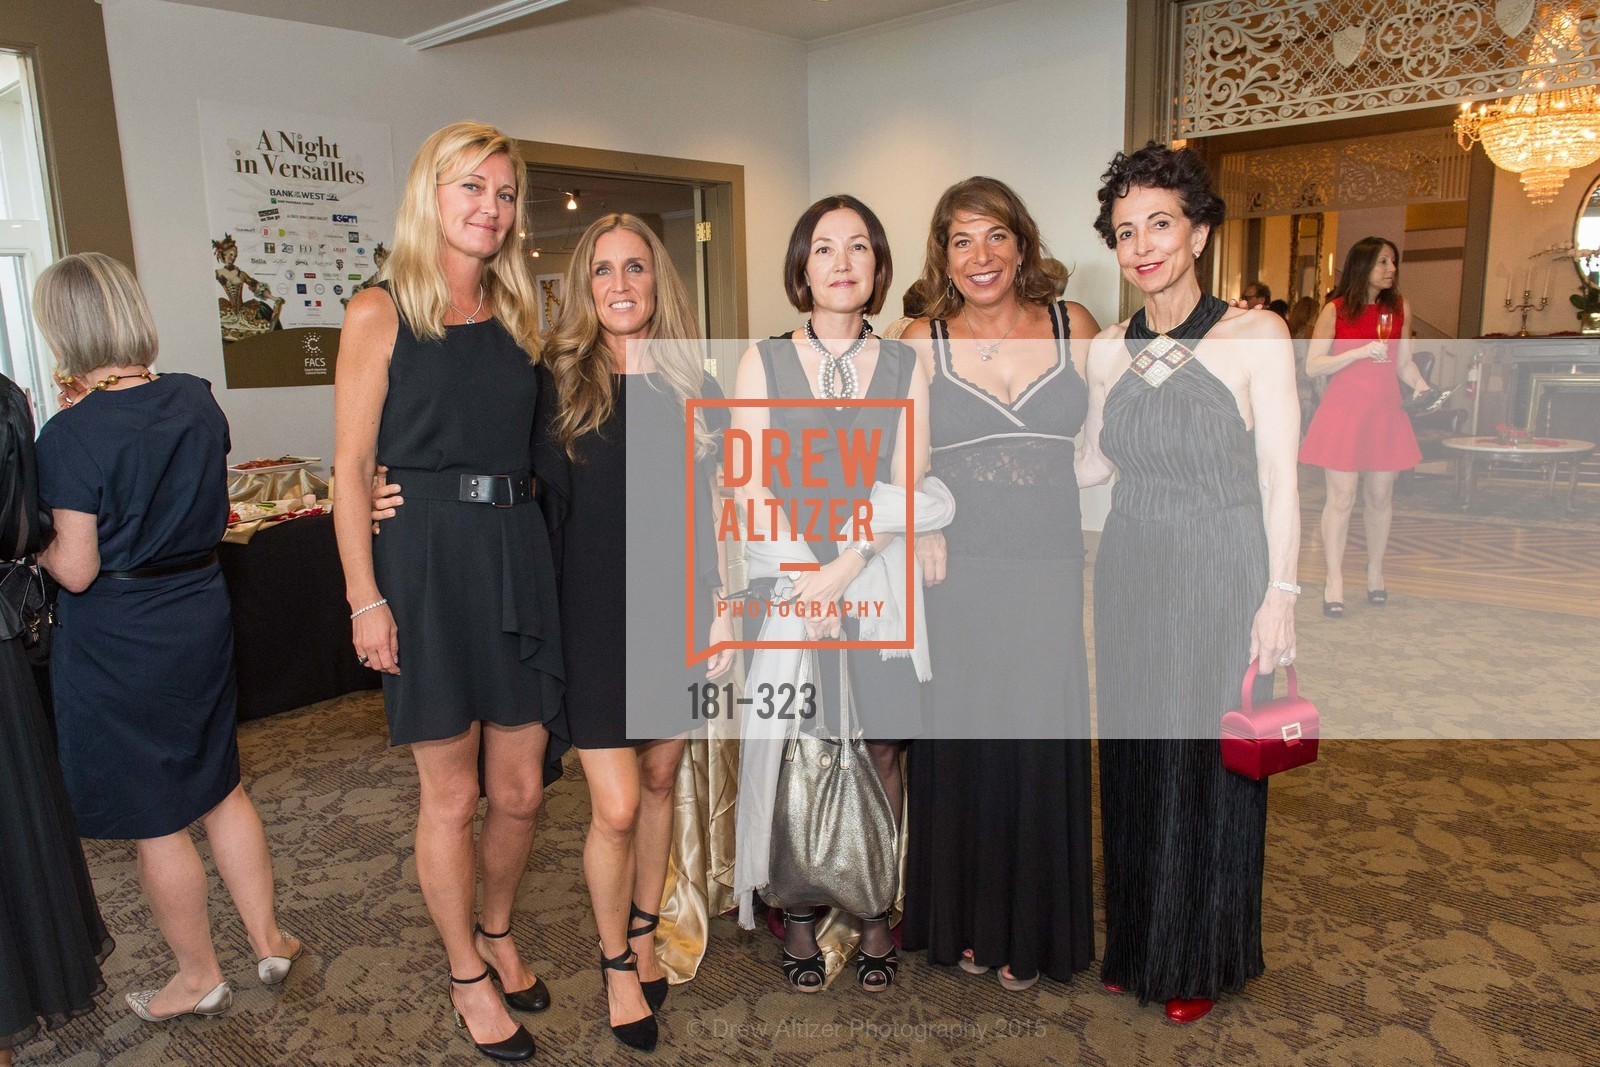 Sofia Andreoli, Delphine DePundt-Gildostath, Elmira Mazhmudimova, Giselle Sponholtz, Marissa McGinnis, Photo #181-323